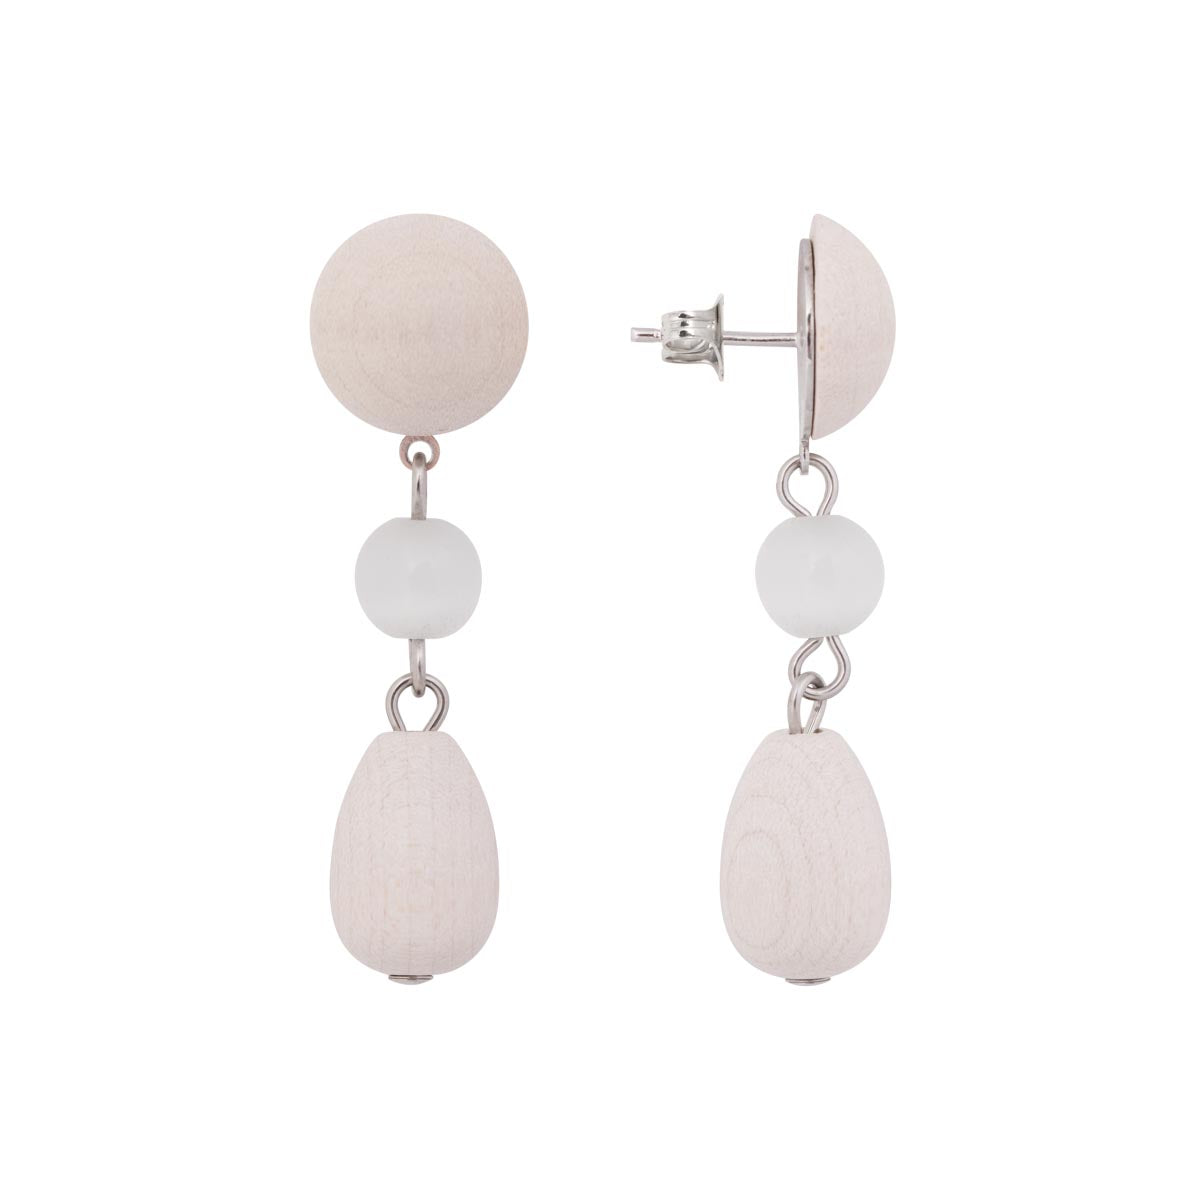 Unelma earrings, ecru and silver